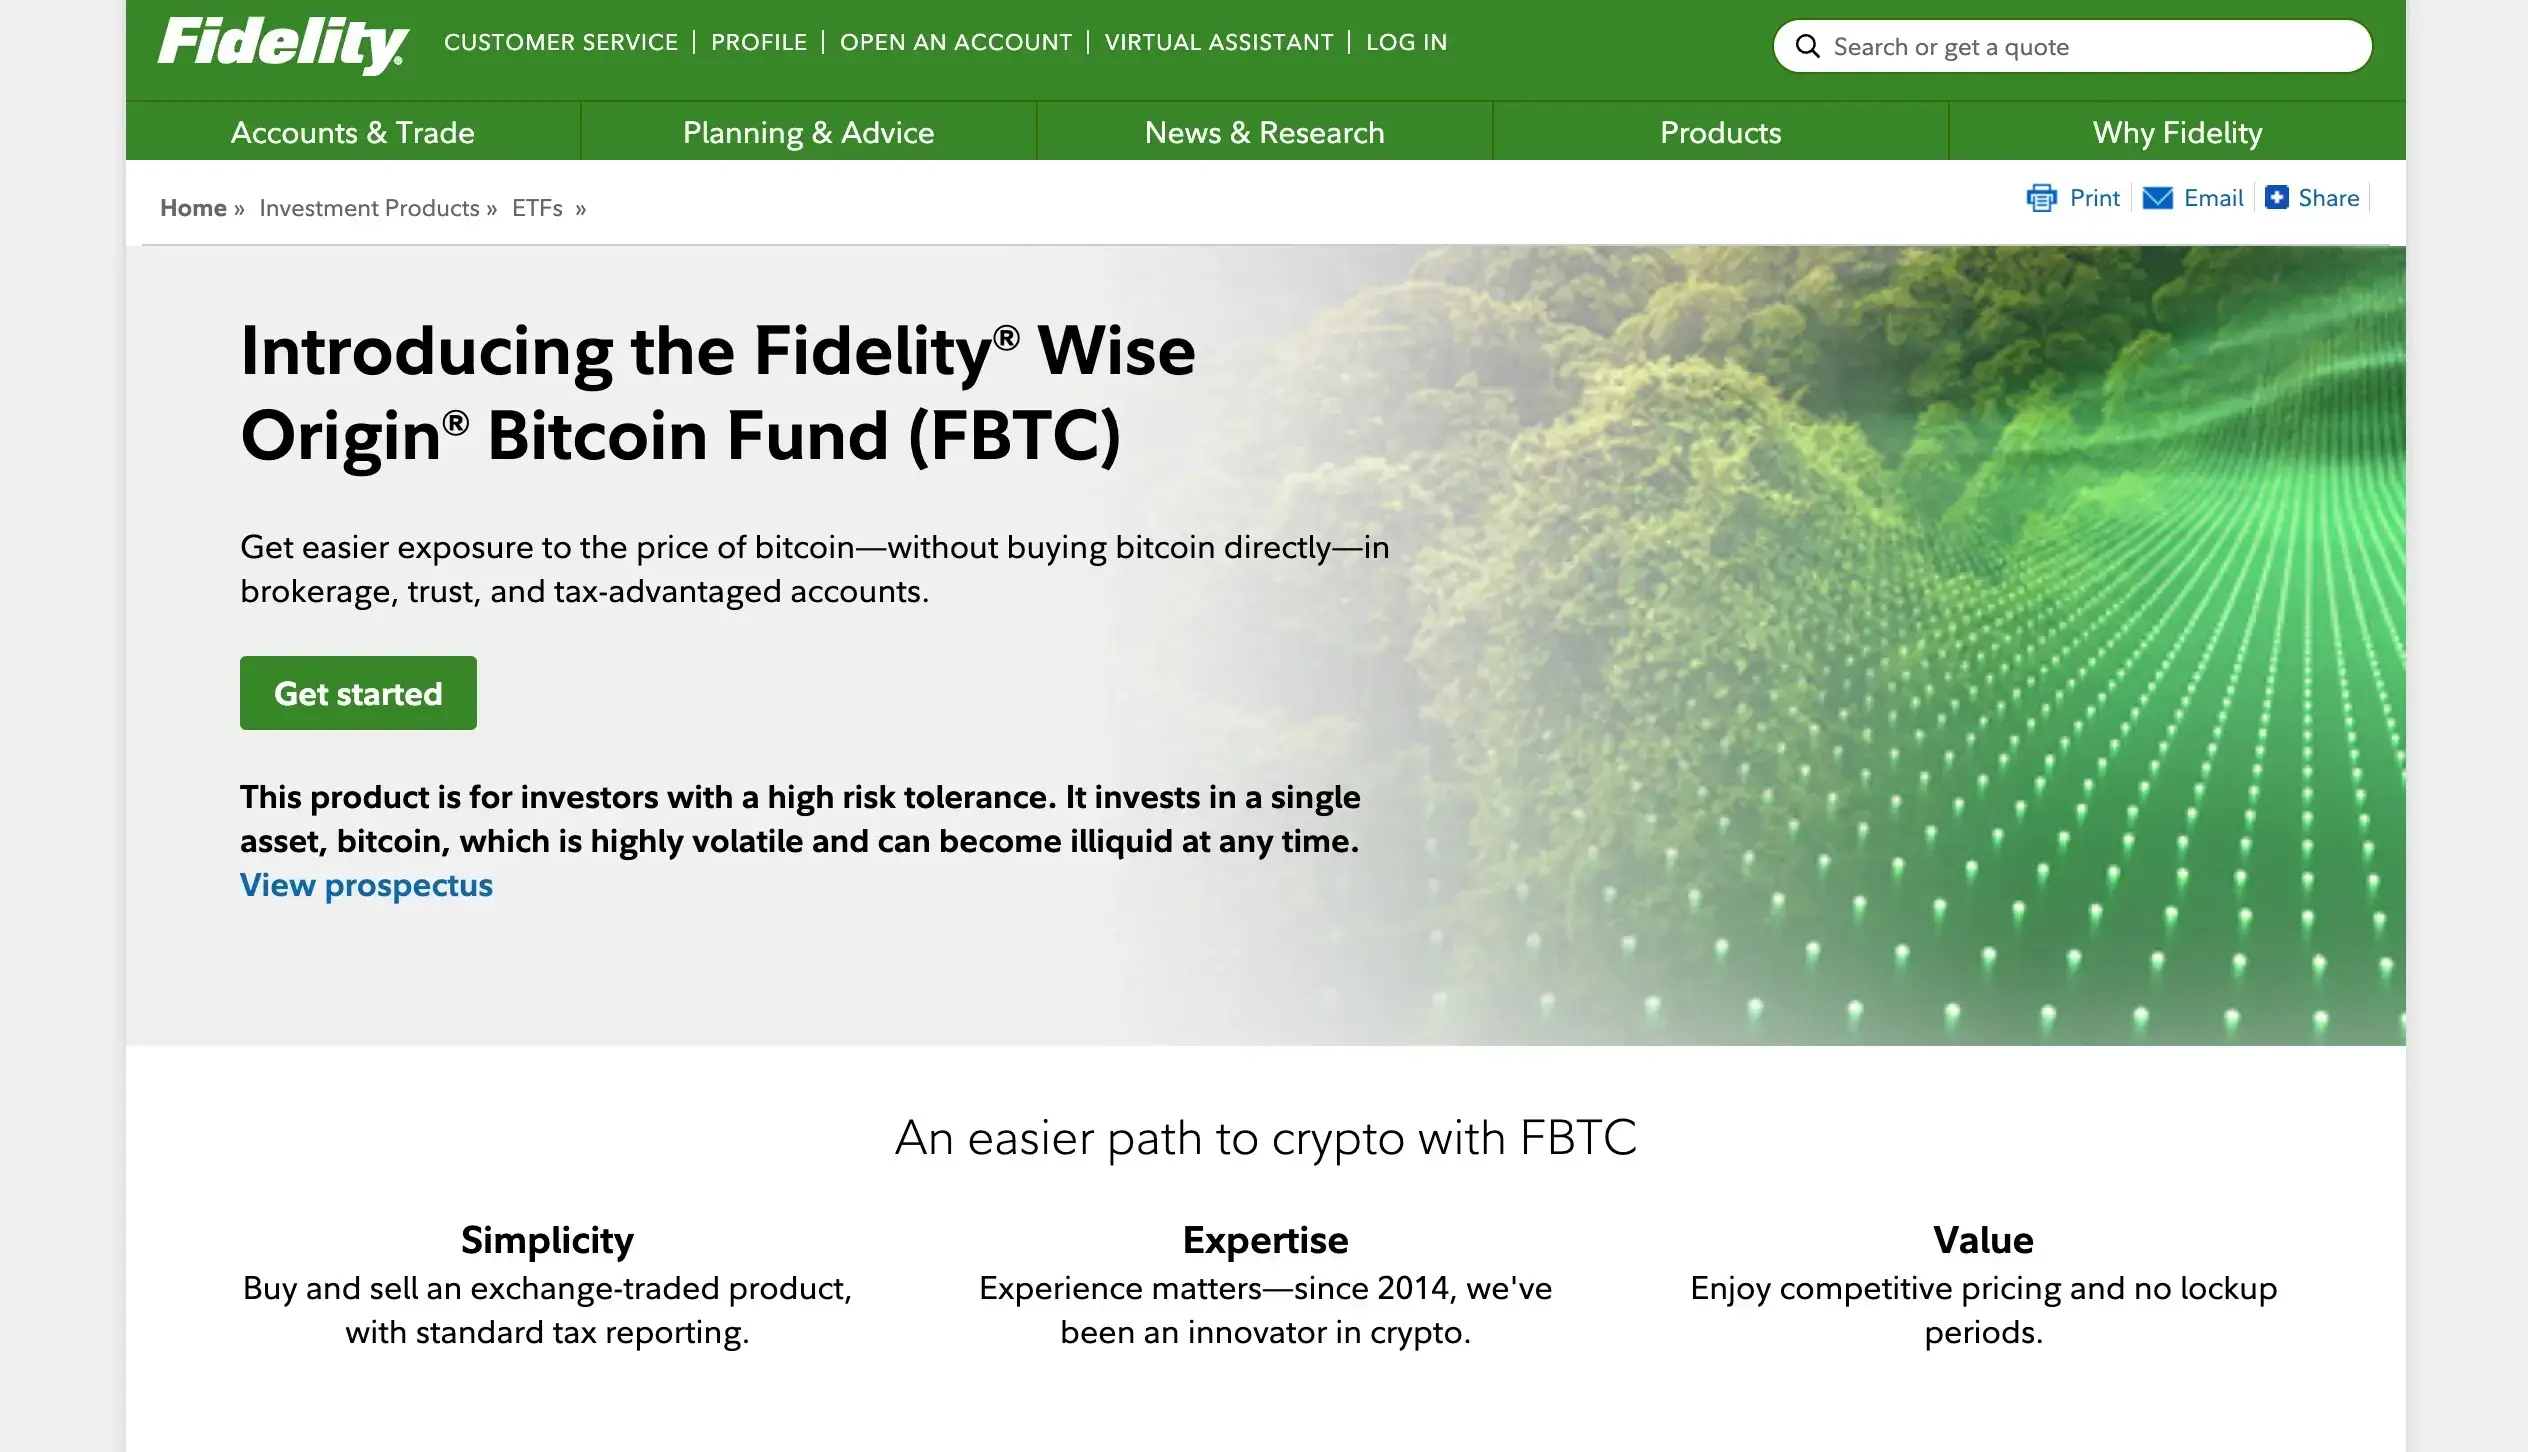 10. Fidelity Wise Origin Bitcoin Fund (FBTC)